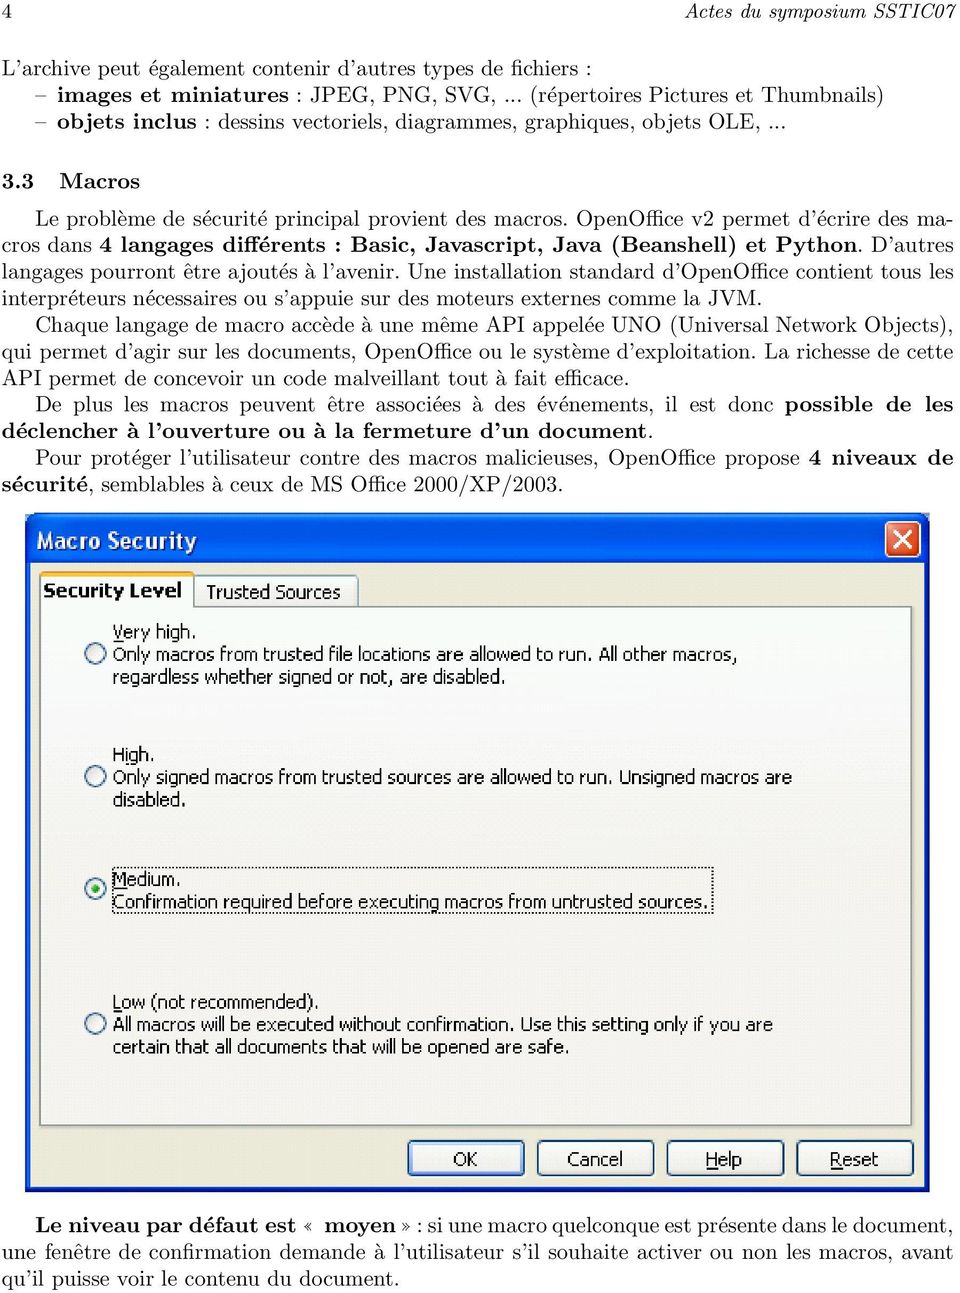 OpenOffice v2 permet d écrire des macros dans 4 langages différents : Basic, Javascript, Java (Beanshell) et Python. D autres langages pourront être ajoutés à l avenir.